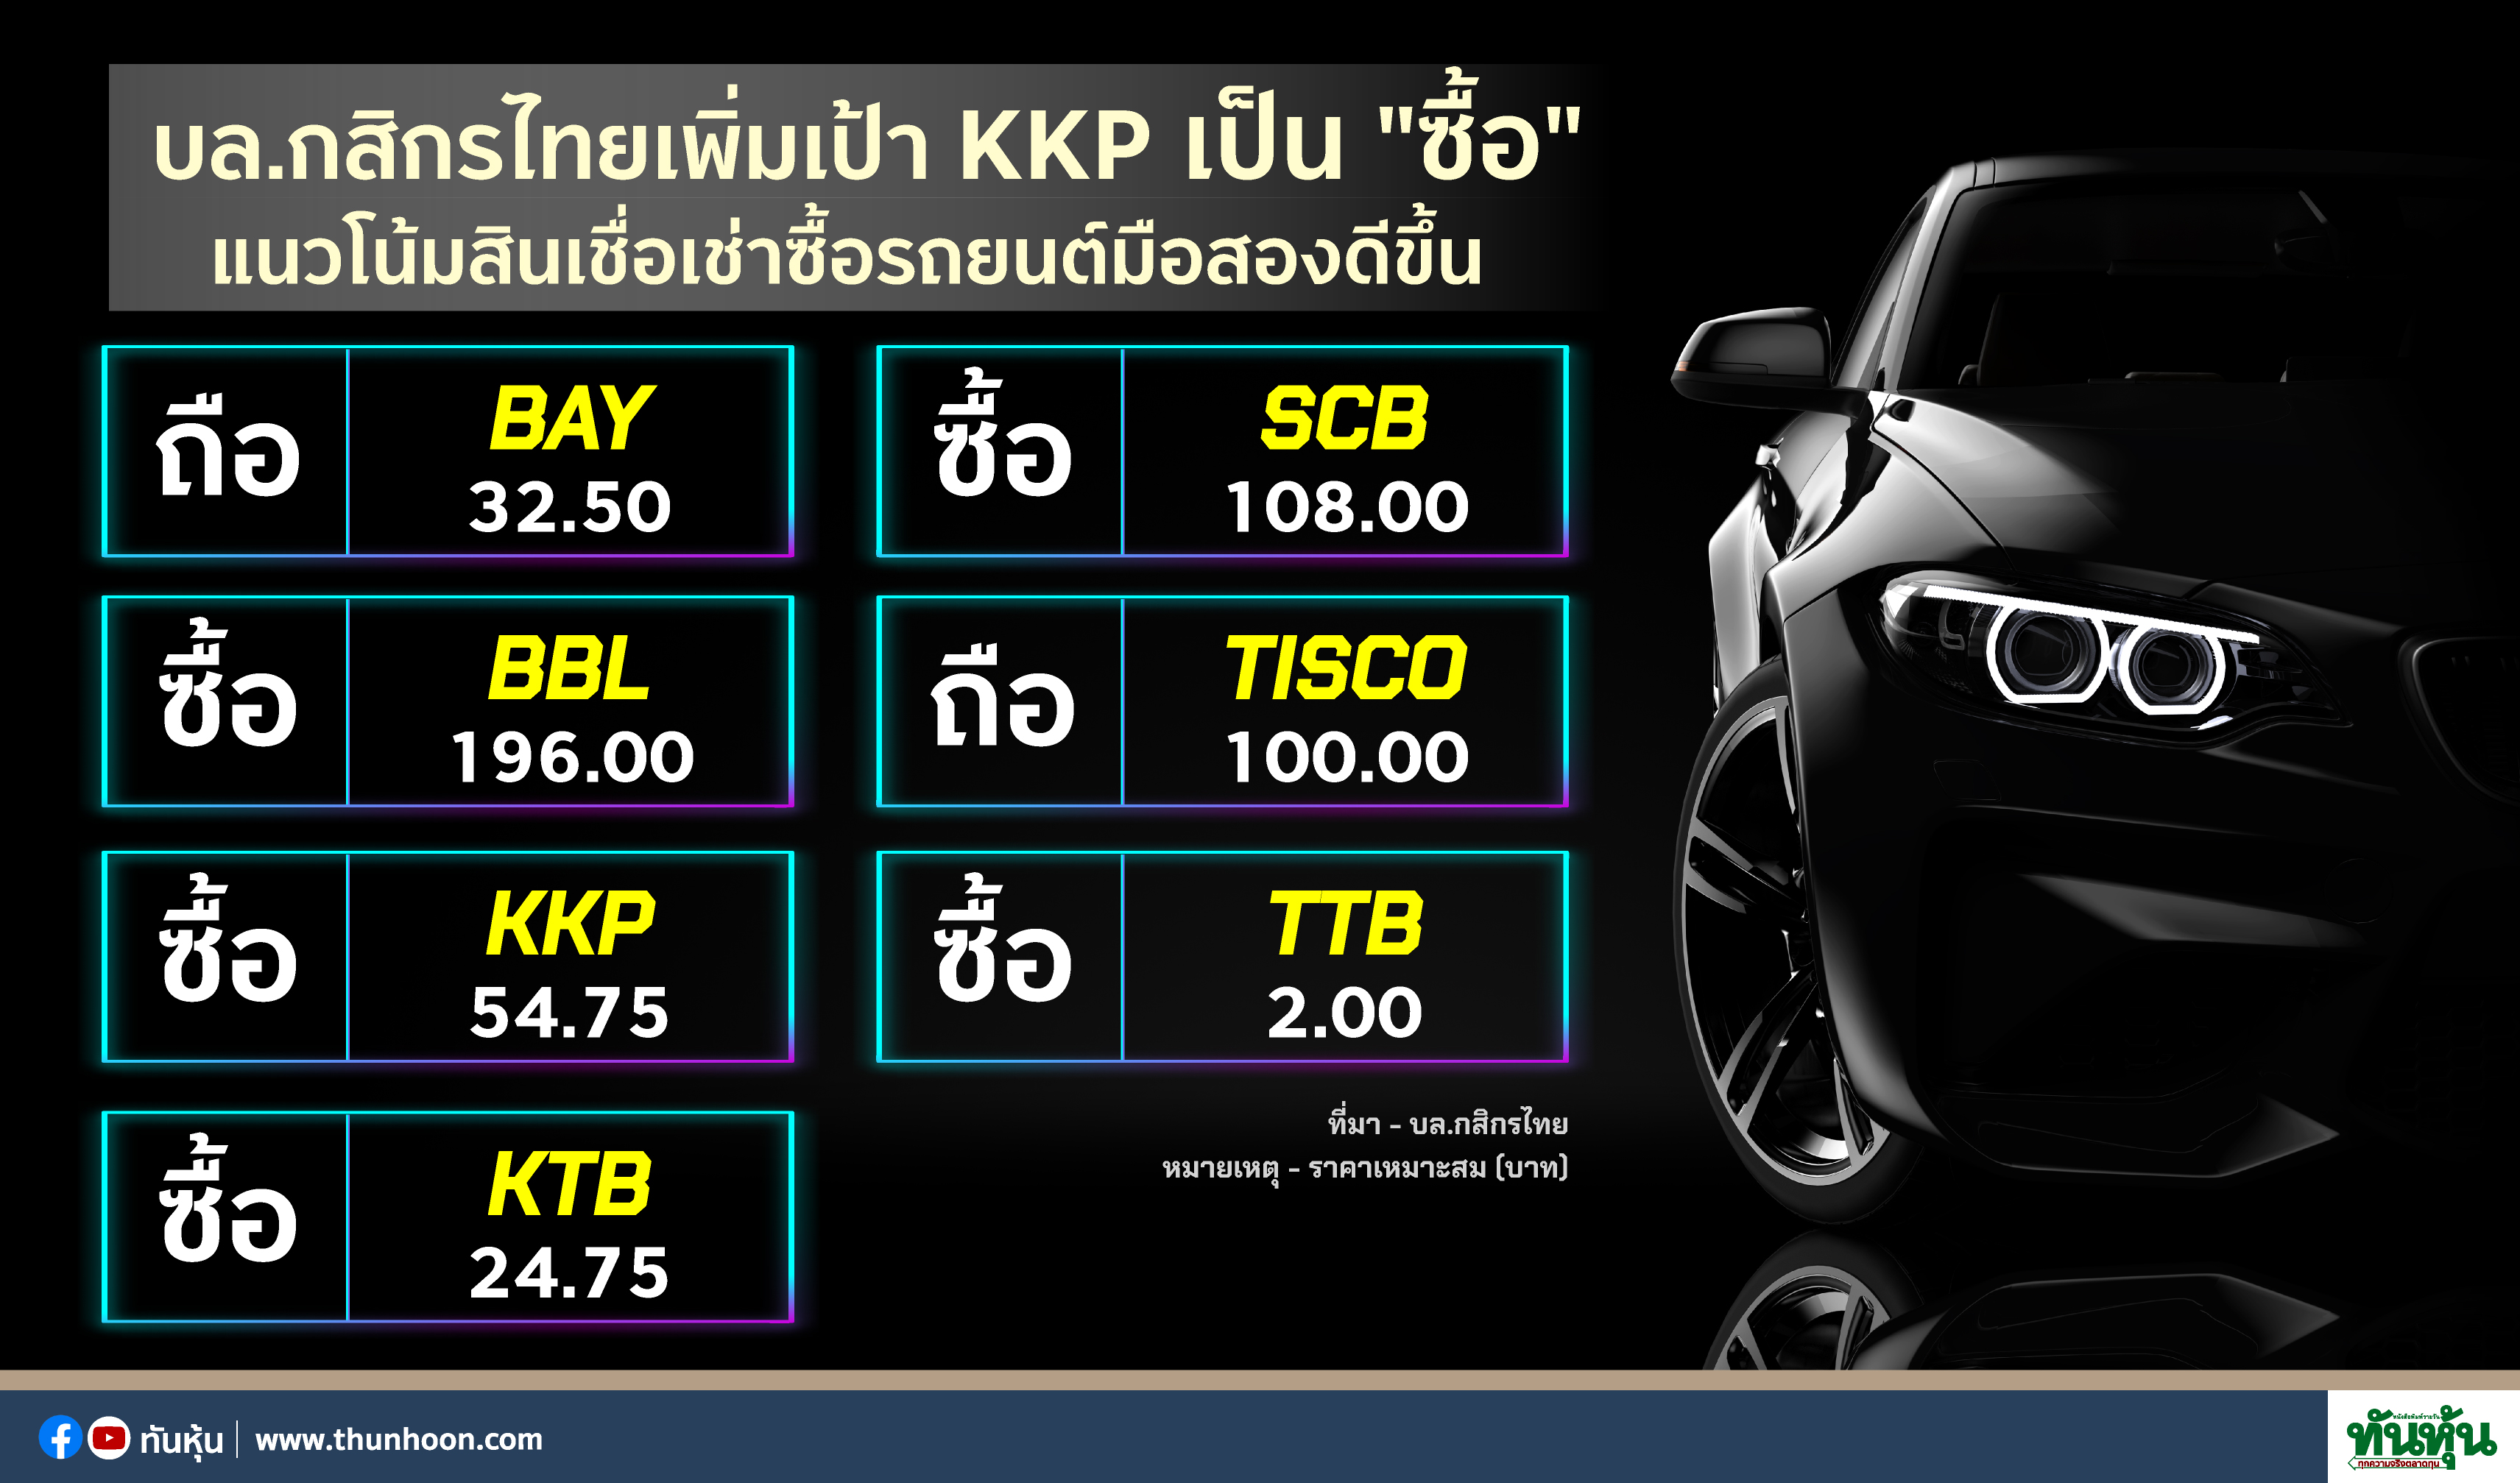 บล.กสิกรไทยเพิ่มเป้า KKP เป็น "ซื้อ"  แนวโน้มสินเชื่อเช่าซื้อรถยนต์มือสองดีขึ้น